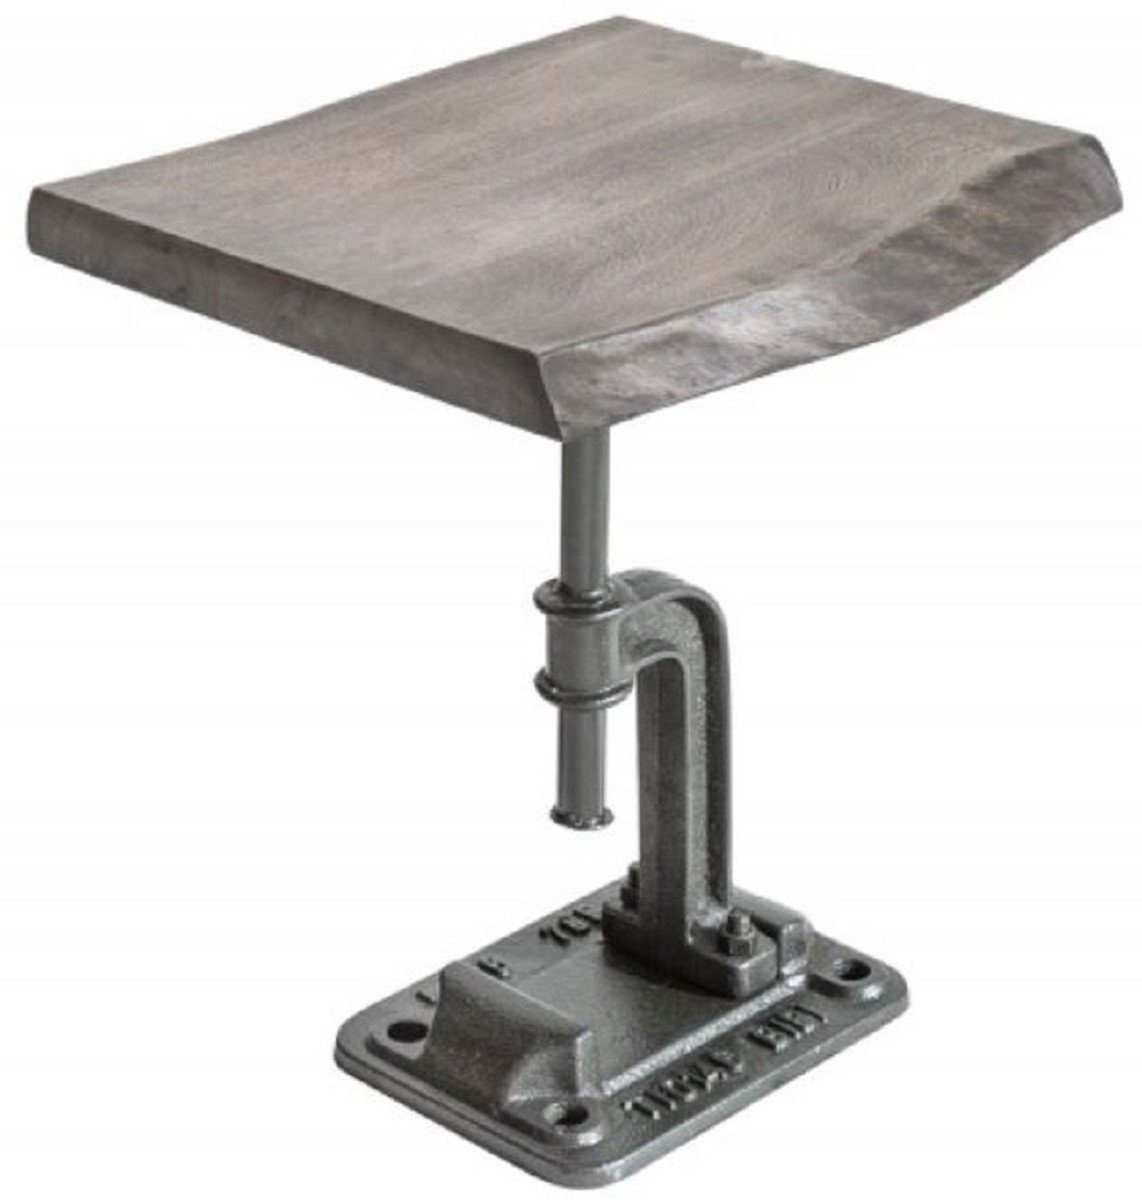 Casa Padrino Beistelltisch Industrial Design Beistelltisch Grau 43 x 35 x H. 46 cm - Industrie Stil Metall Tisch mit Massivholz Tischplatte - Industrial Design Möbel